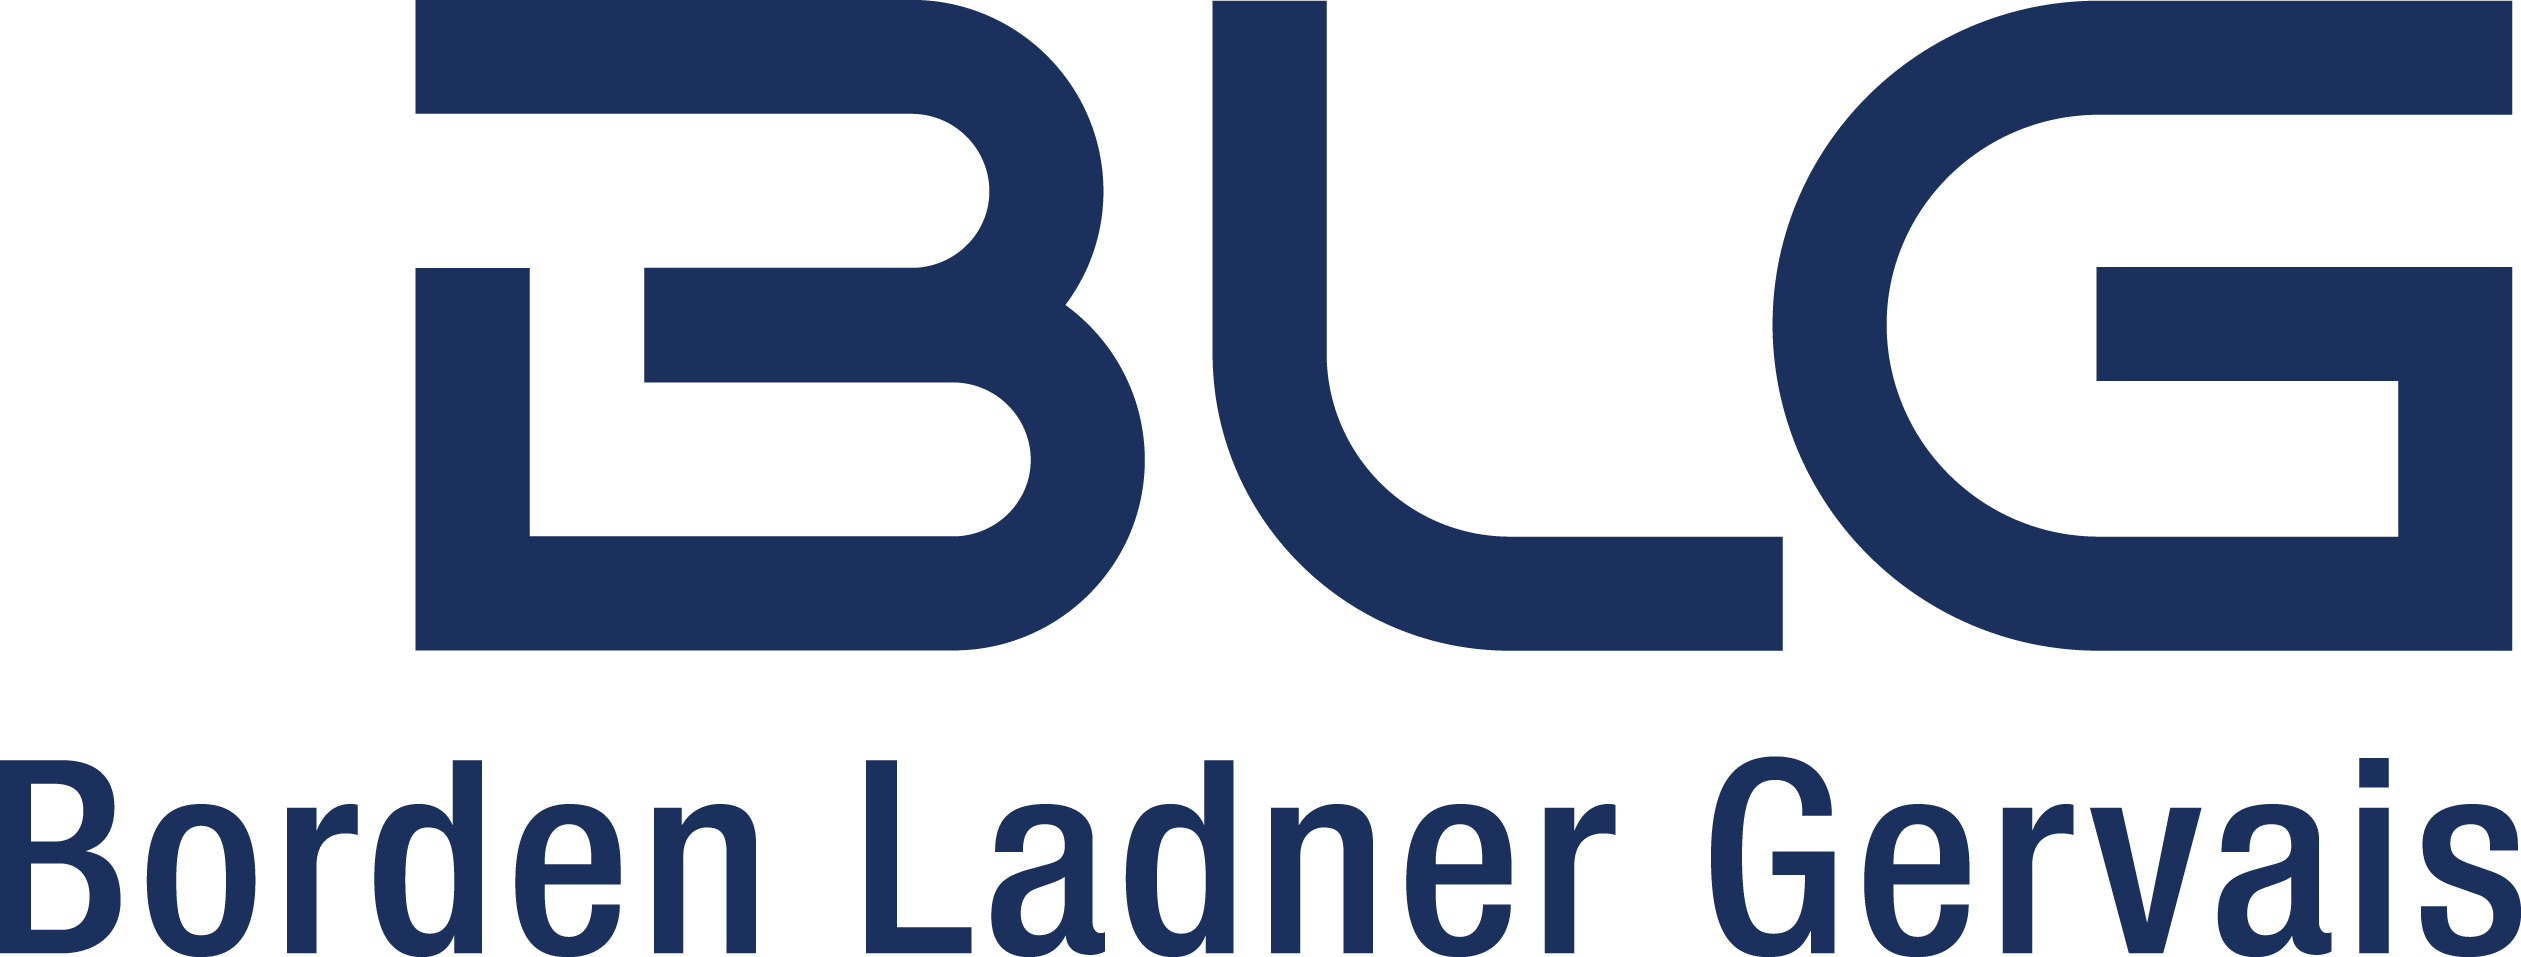 BLG LLP Logo